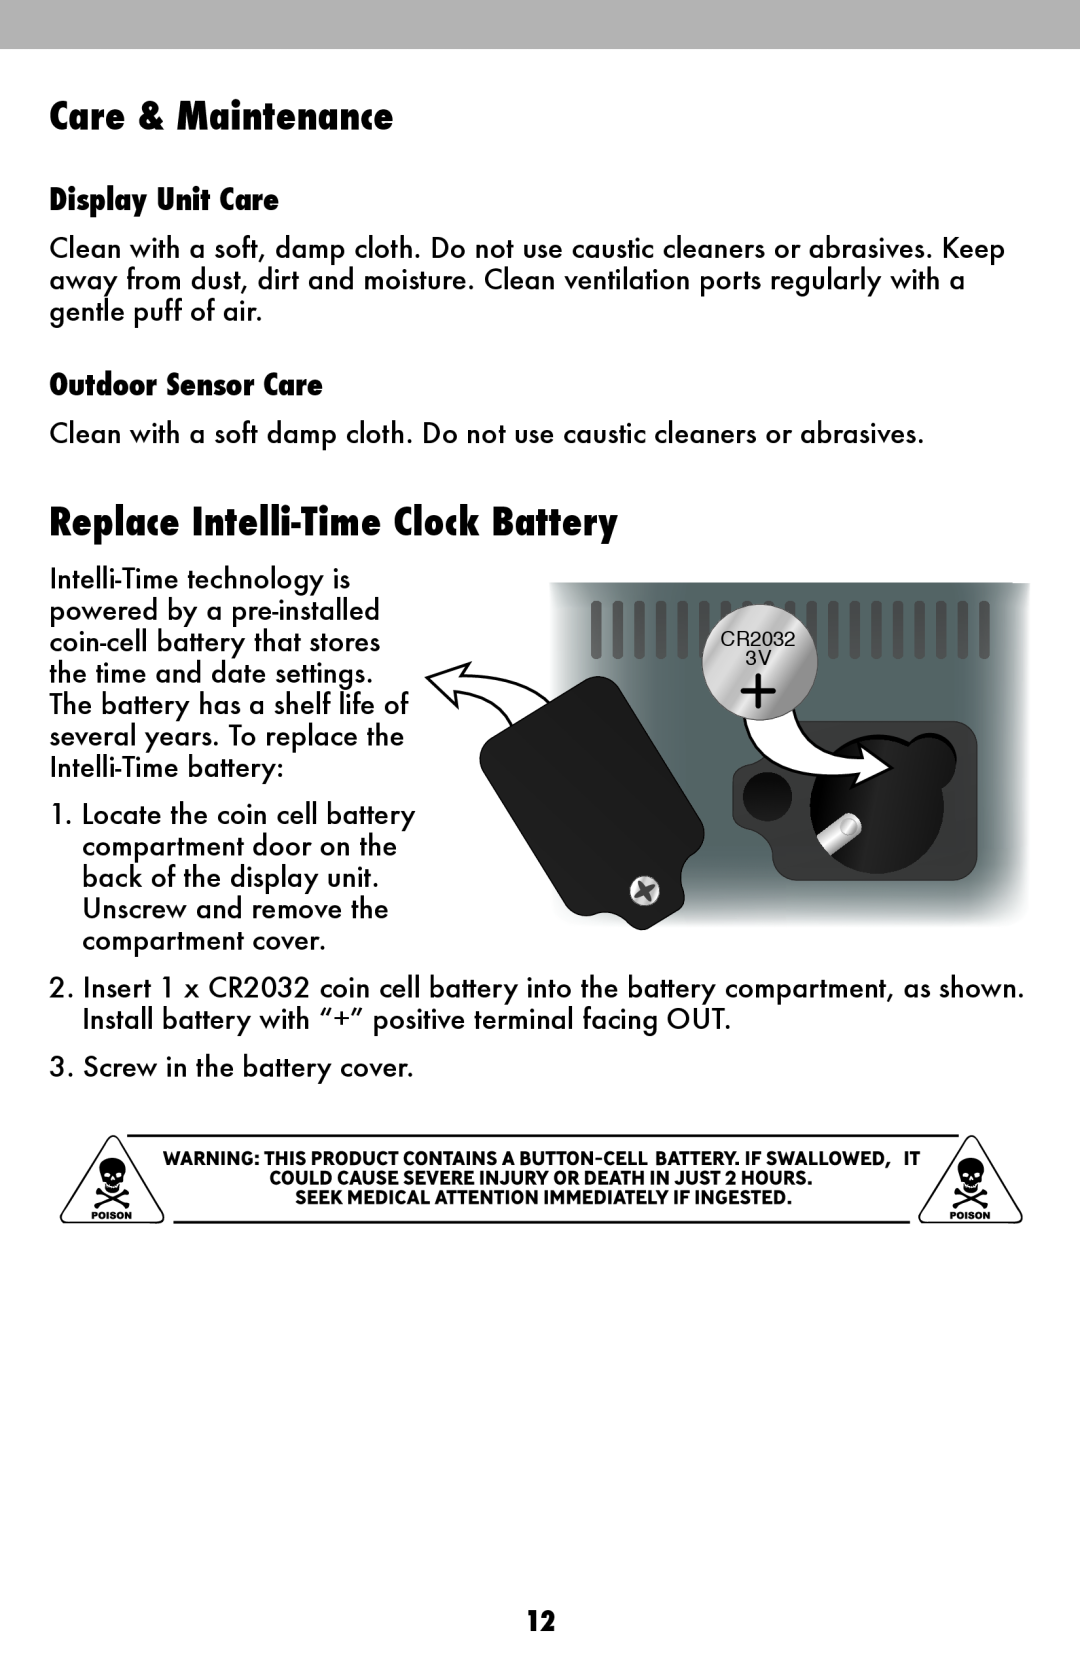 Acu-Rite 13026, 13020 Care & Maintenance, Replace Intelli-Time Clock Battery, Display Unit Care, Outdoor Sensor Care 